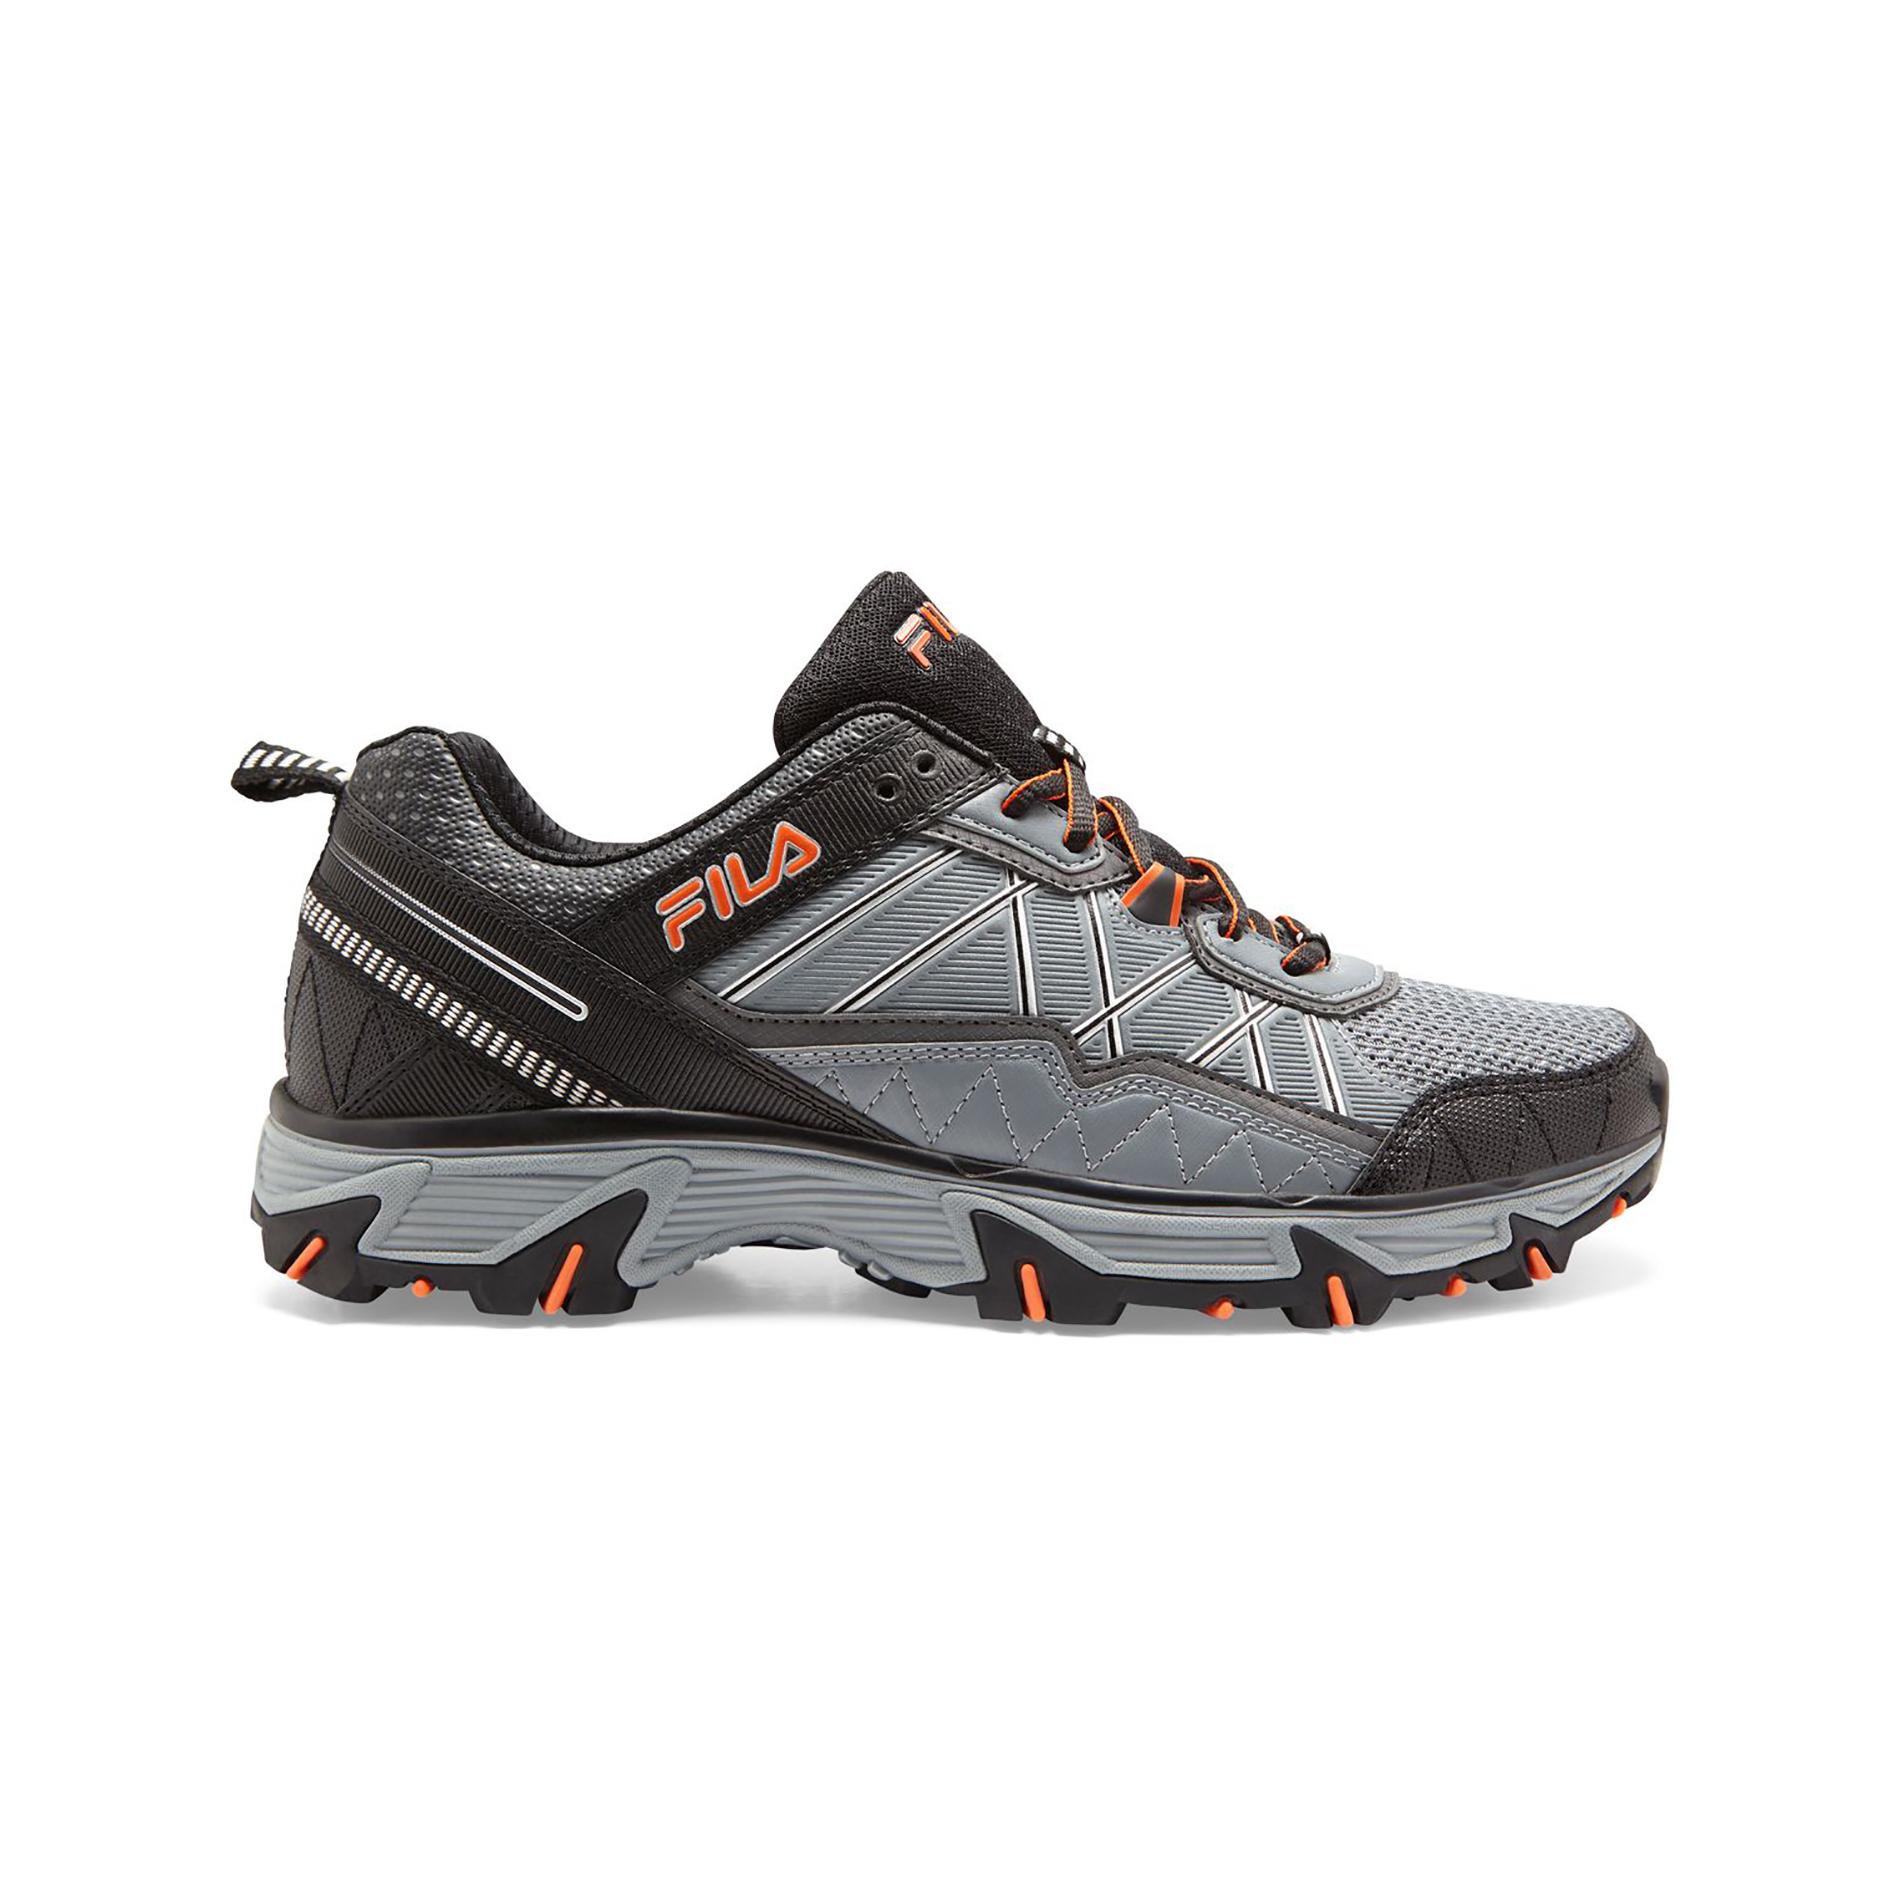 Fila Men's At Peake Running Shoe - Gray/Black/Orange